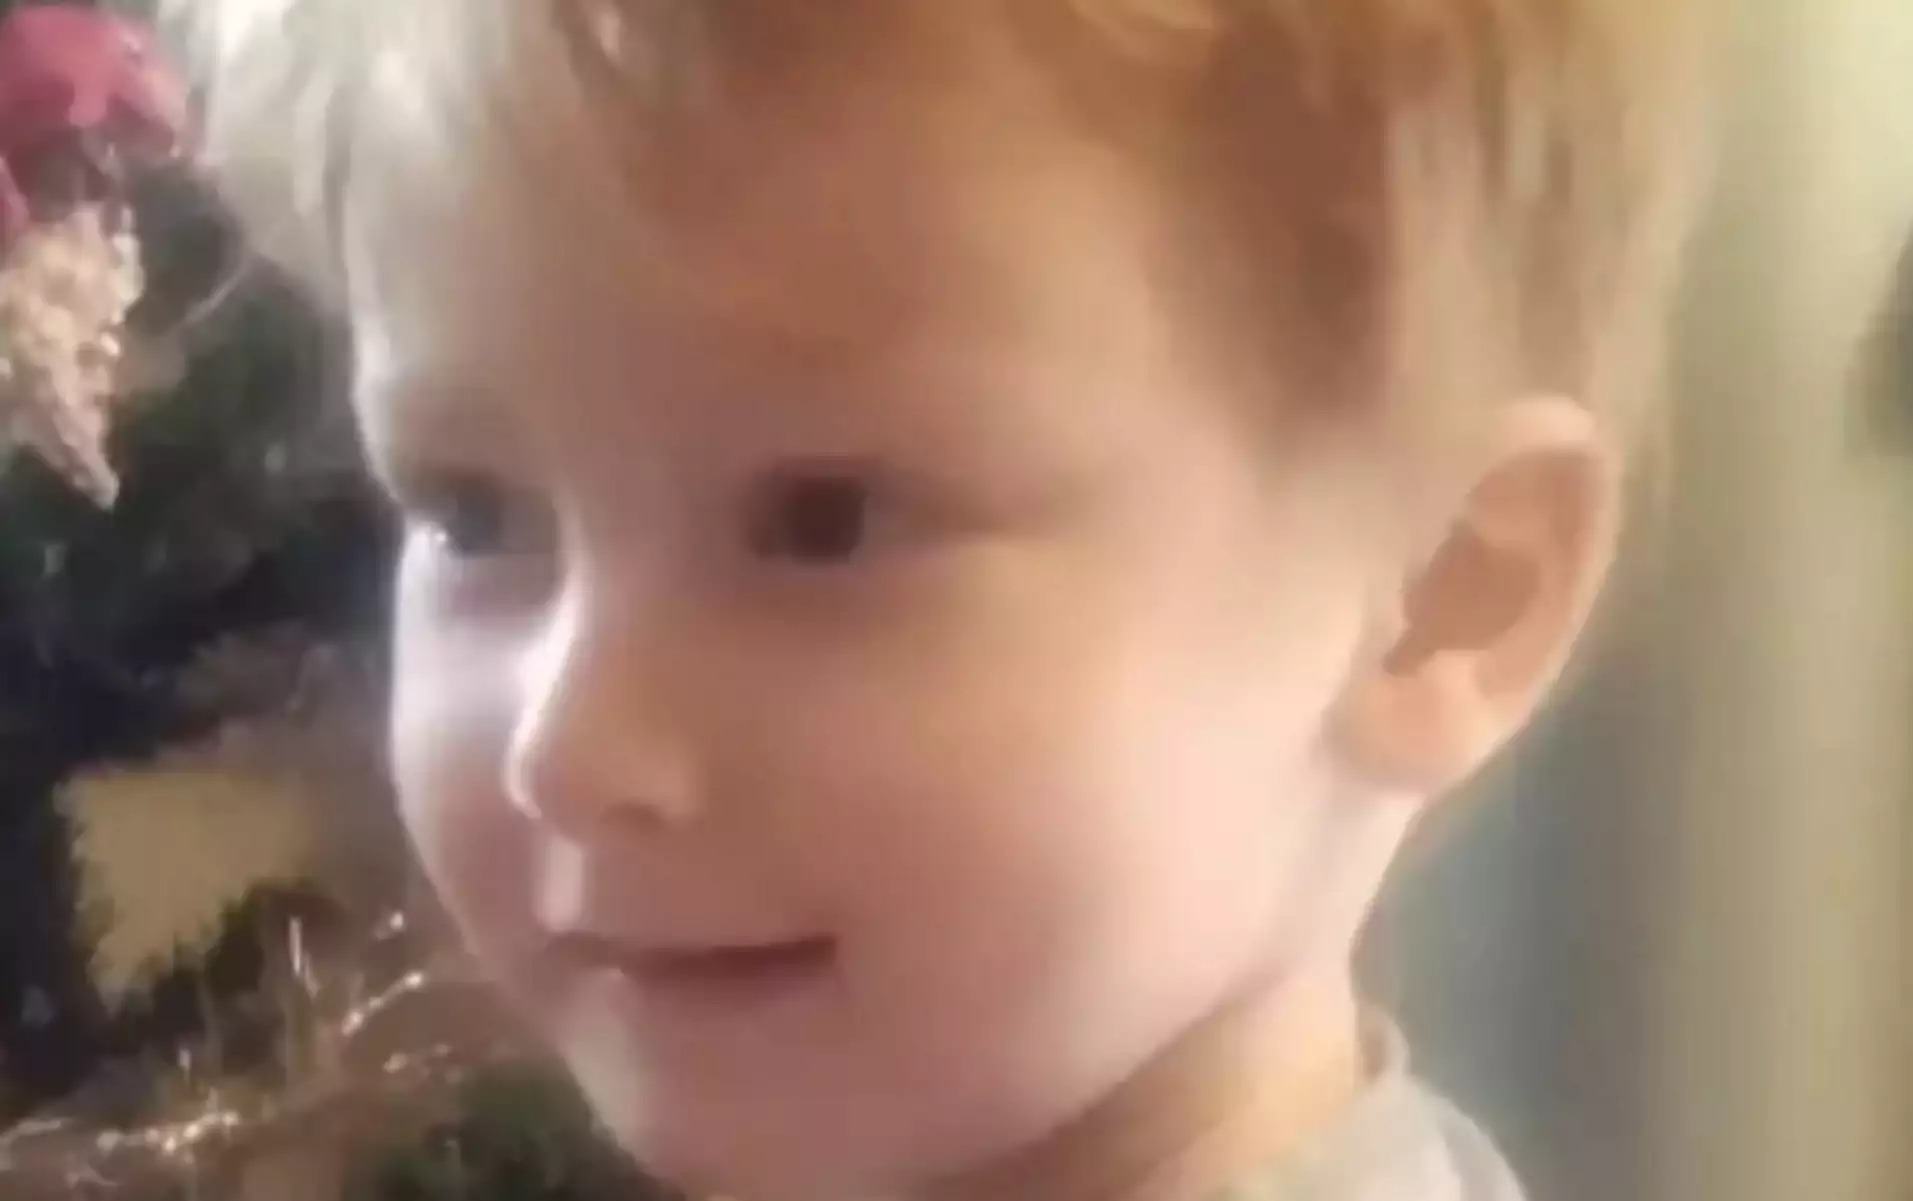 Αρπαγή 6χρονου στην Κηφισιά: Πληροφορίες ότι βρίσκεται στη Νορβηγία ο μικρός Ράινερ